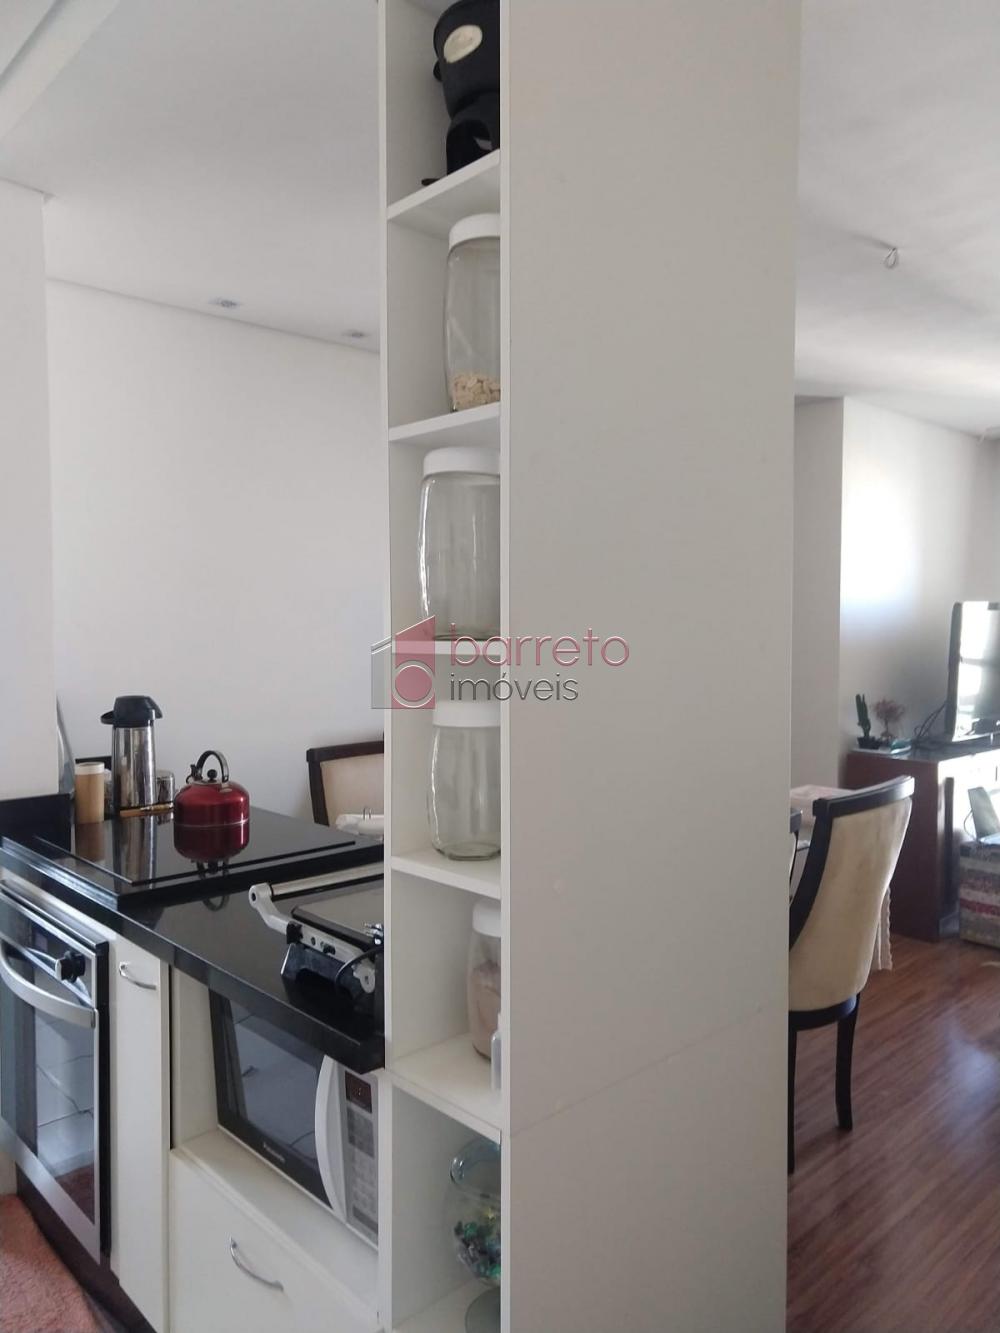 Comprar Apartamento / Padrão em Jundiaí R$ 460.000,00 - Foto 4